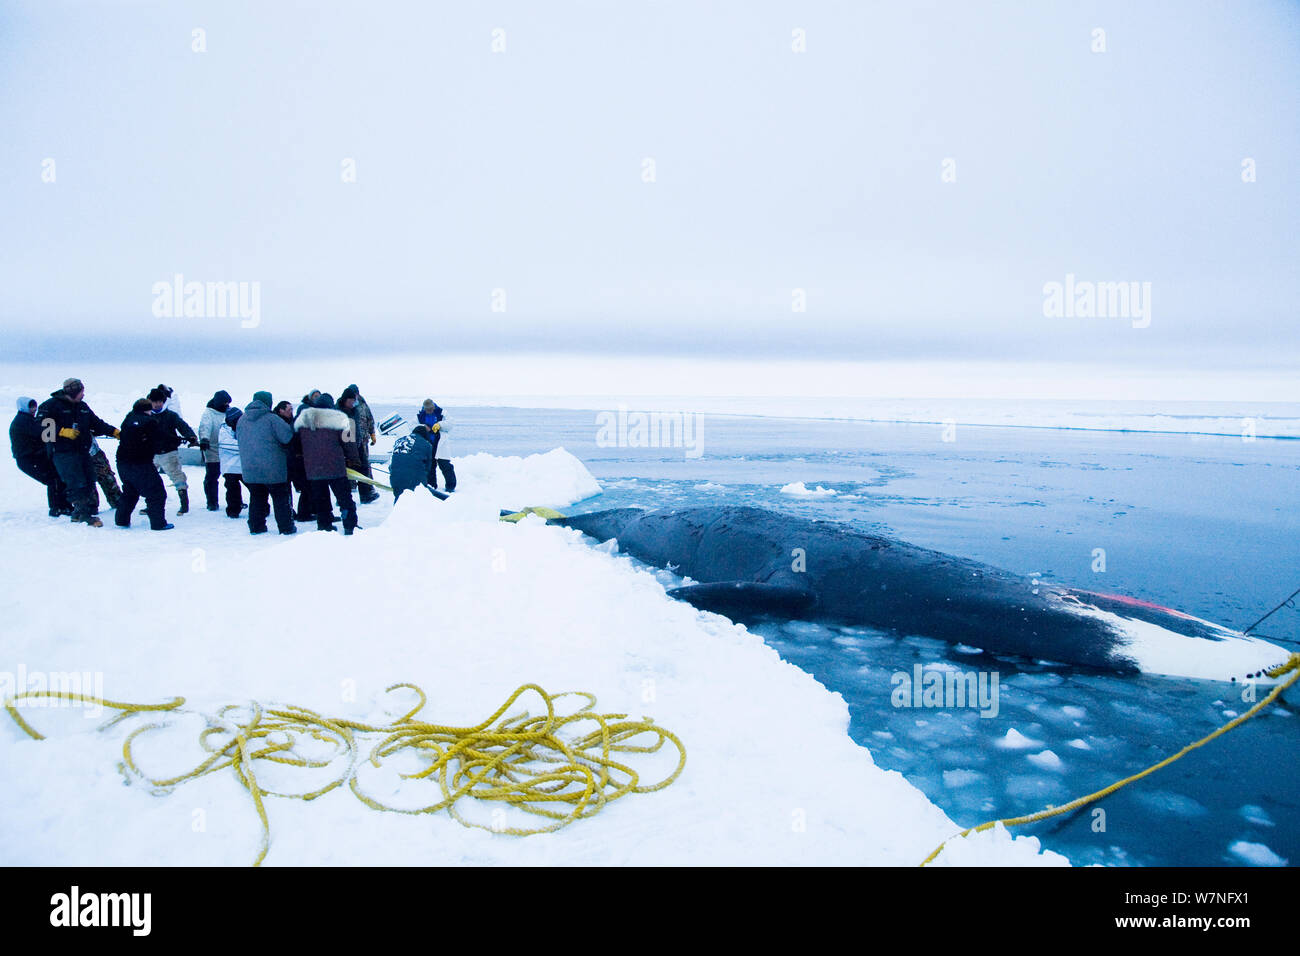 Les baleiniers de subsistance Inupiaq se préparent à tirer vers le haut une baleine boréale (Balaena mysticetus) attraper le long du bord de la coupure dans le pack de glace. Mer de Tchoukotka, au large de Barrow, côte de l'Arctique de l'Alaska, avril 2012. Banque D'Images